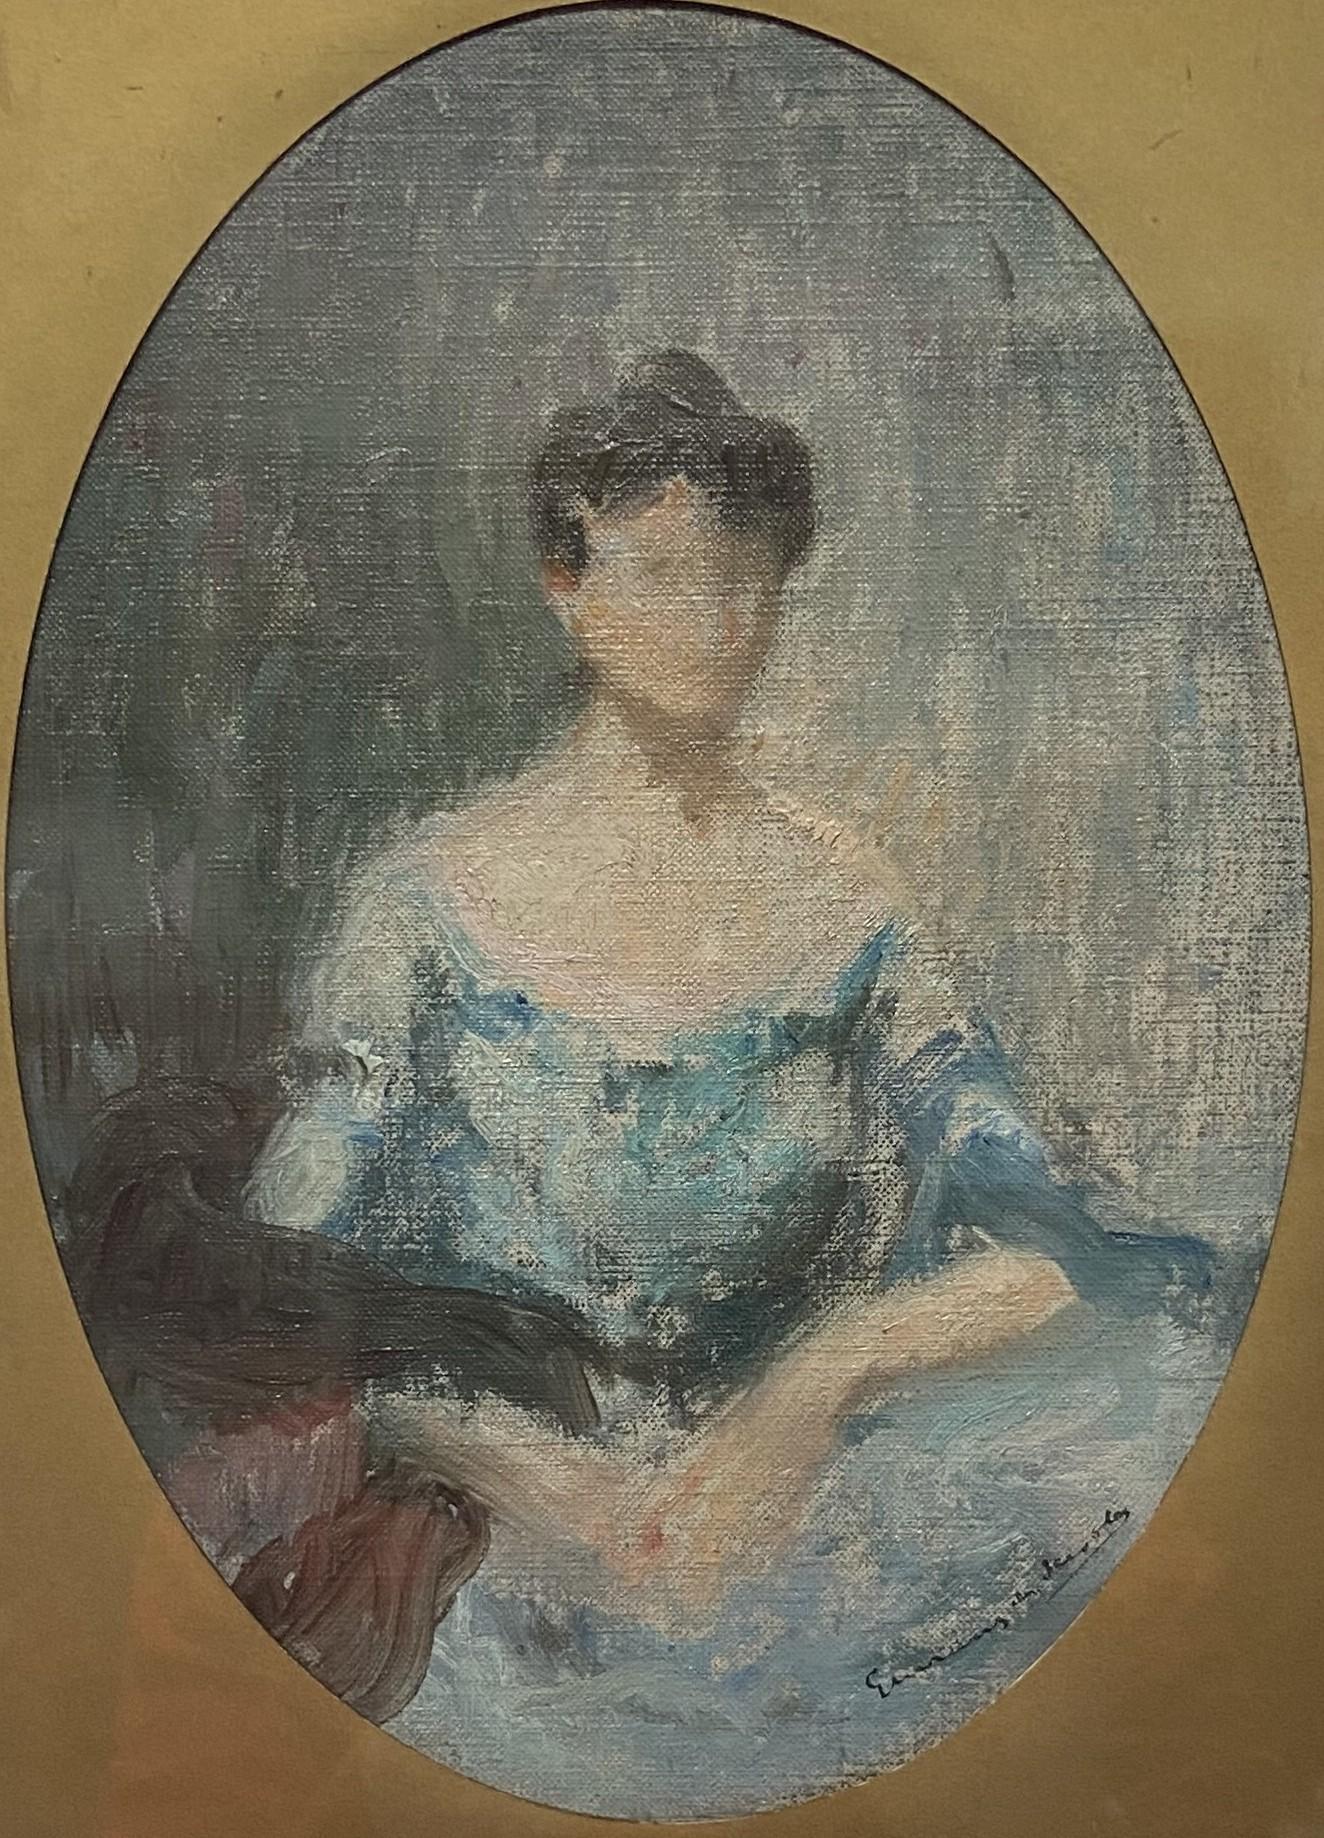 Lucien-Victor Guirand de Scévola ( 1871 - 1950)
Portrait d'une dame, esquisse
signé en en bas à droite
Huile sur toile transférée sur carton
25 x 18 cm ovale
Encadré : 31 x 24,5 cm

Cette esquisse de portrait a sans doute été conçue comme une œuvre